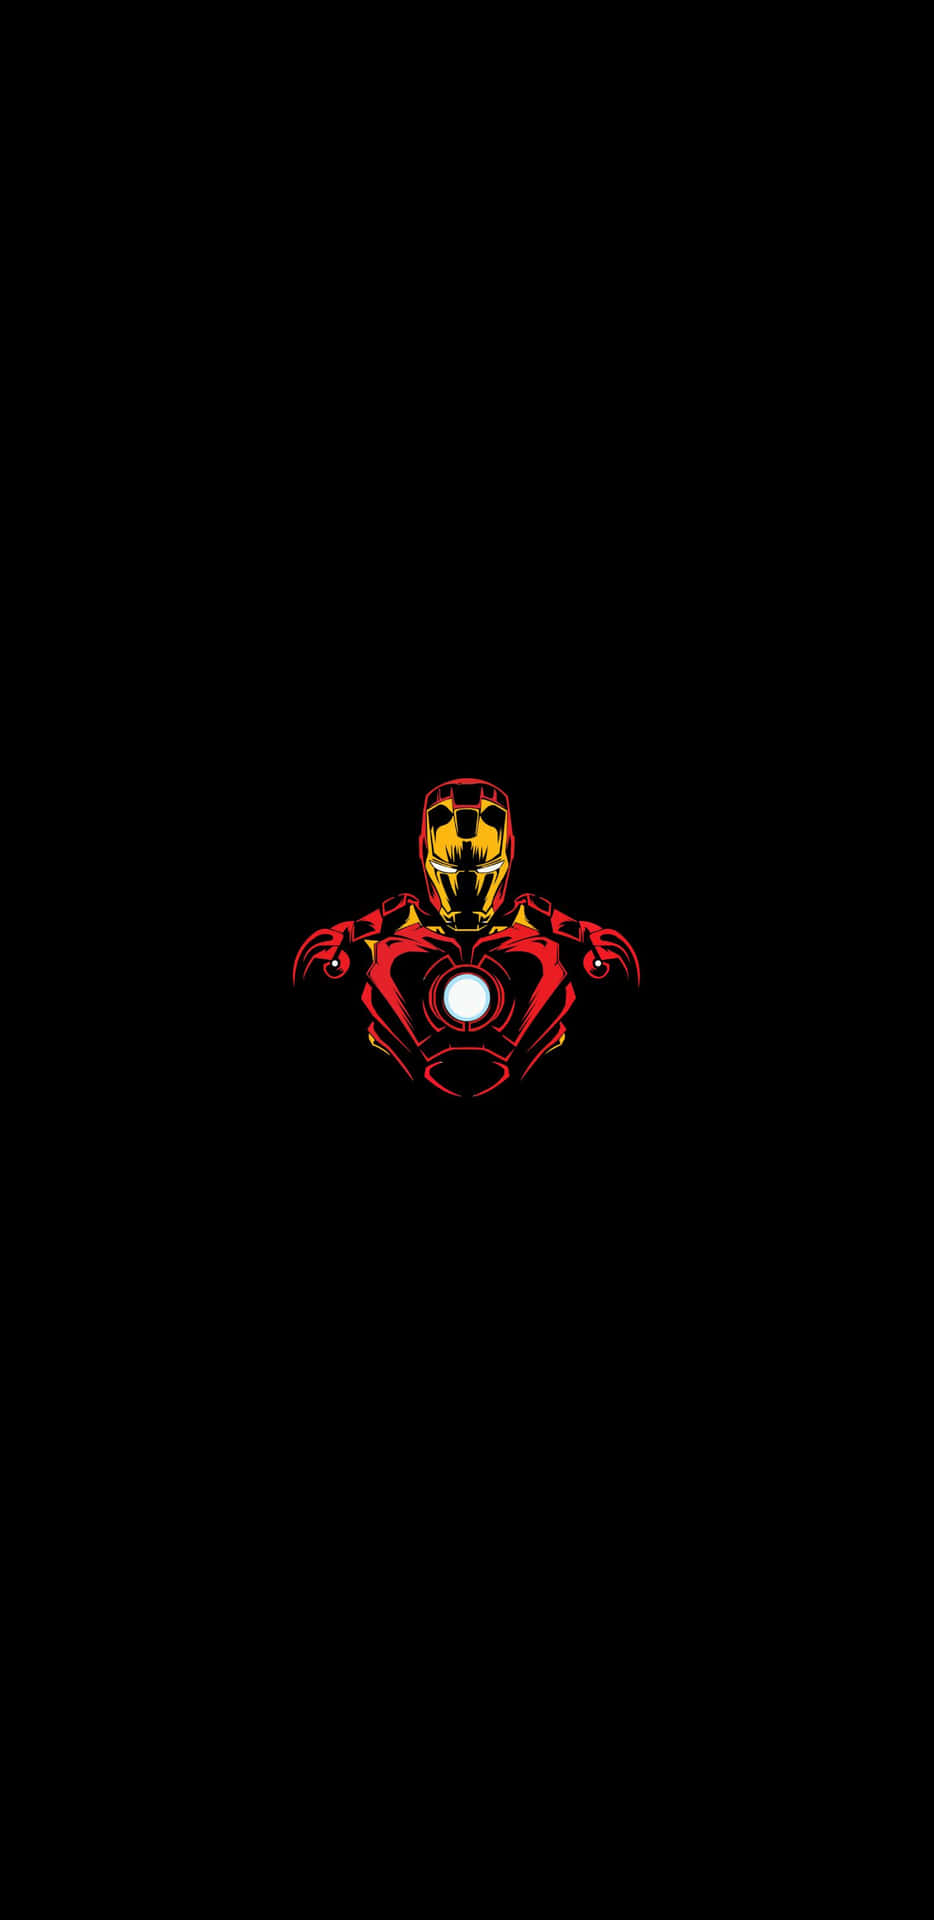 Pixel3xl Iron Man På Svart Bakgrund.